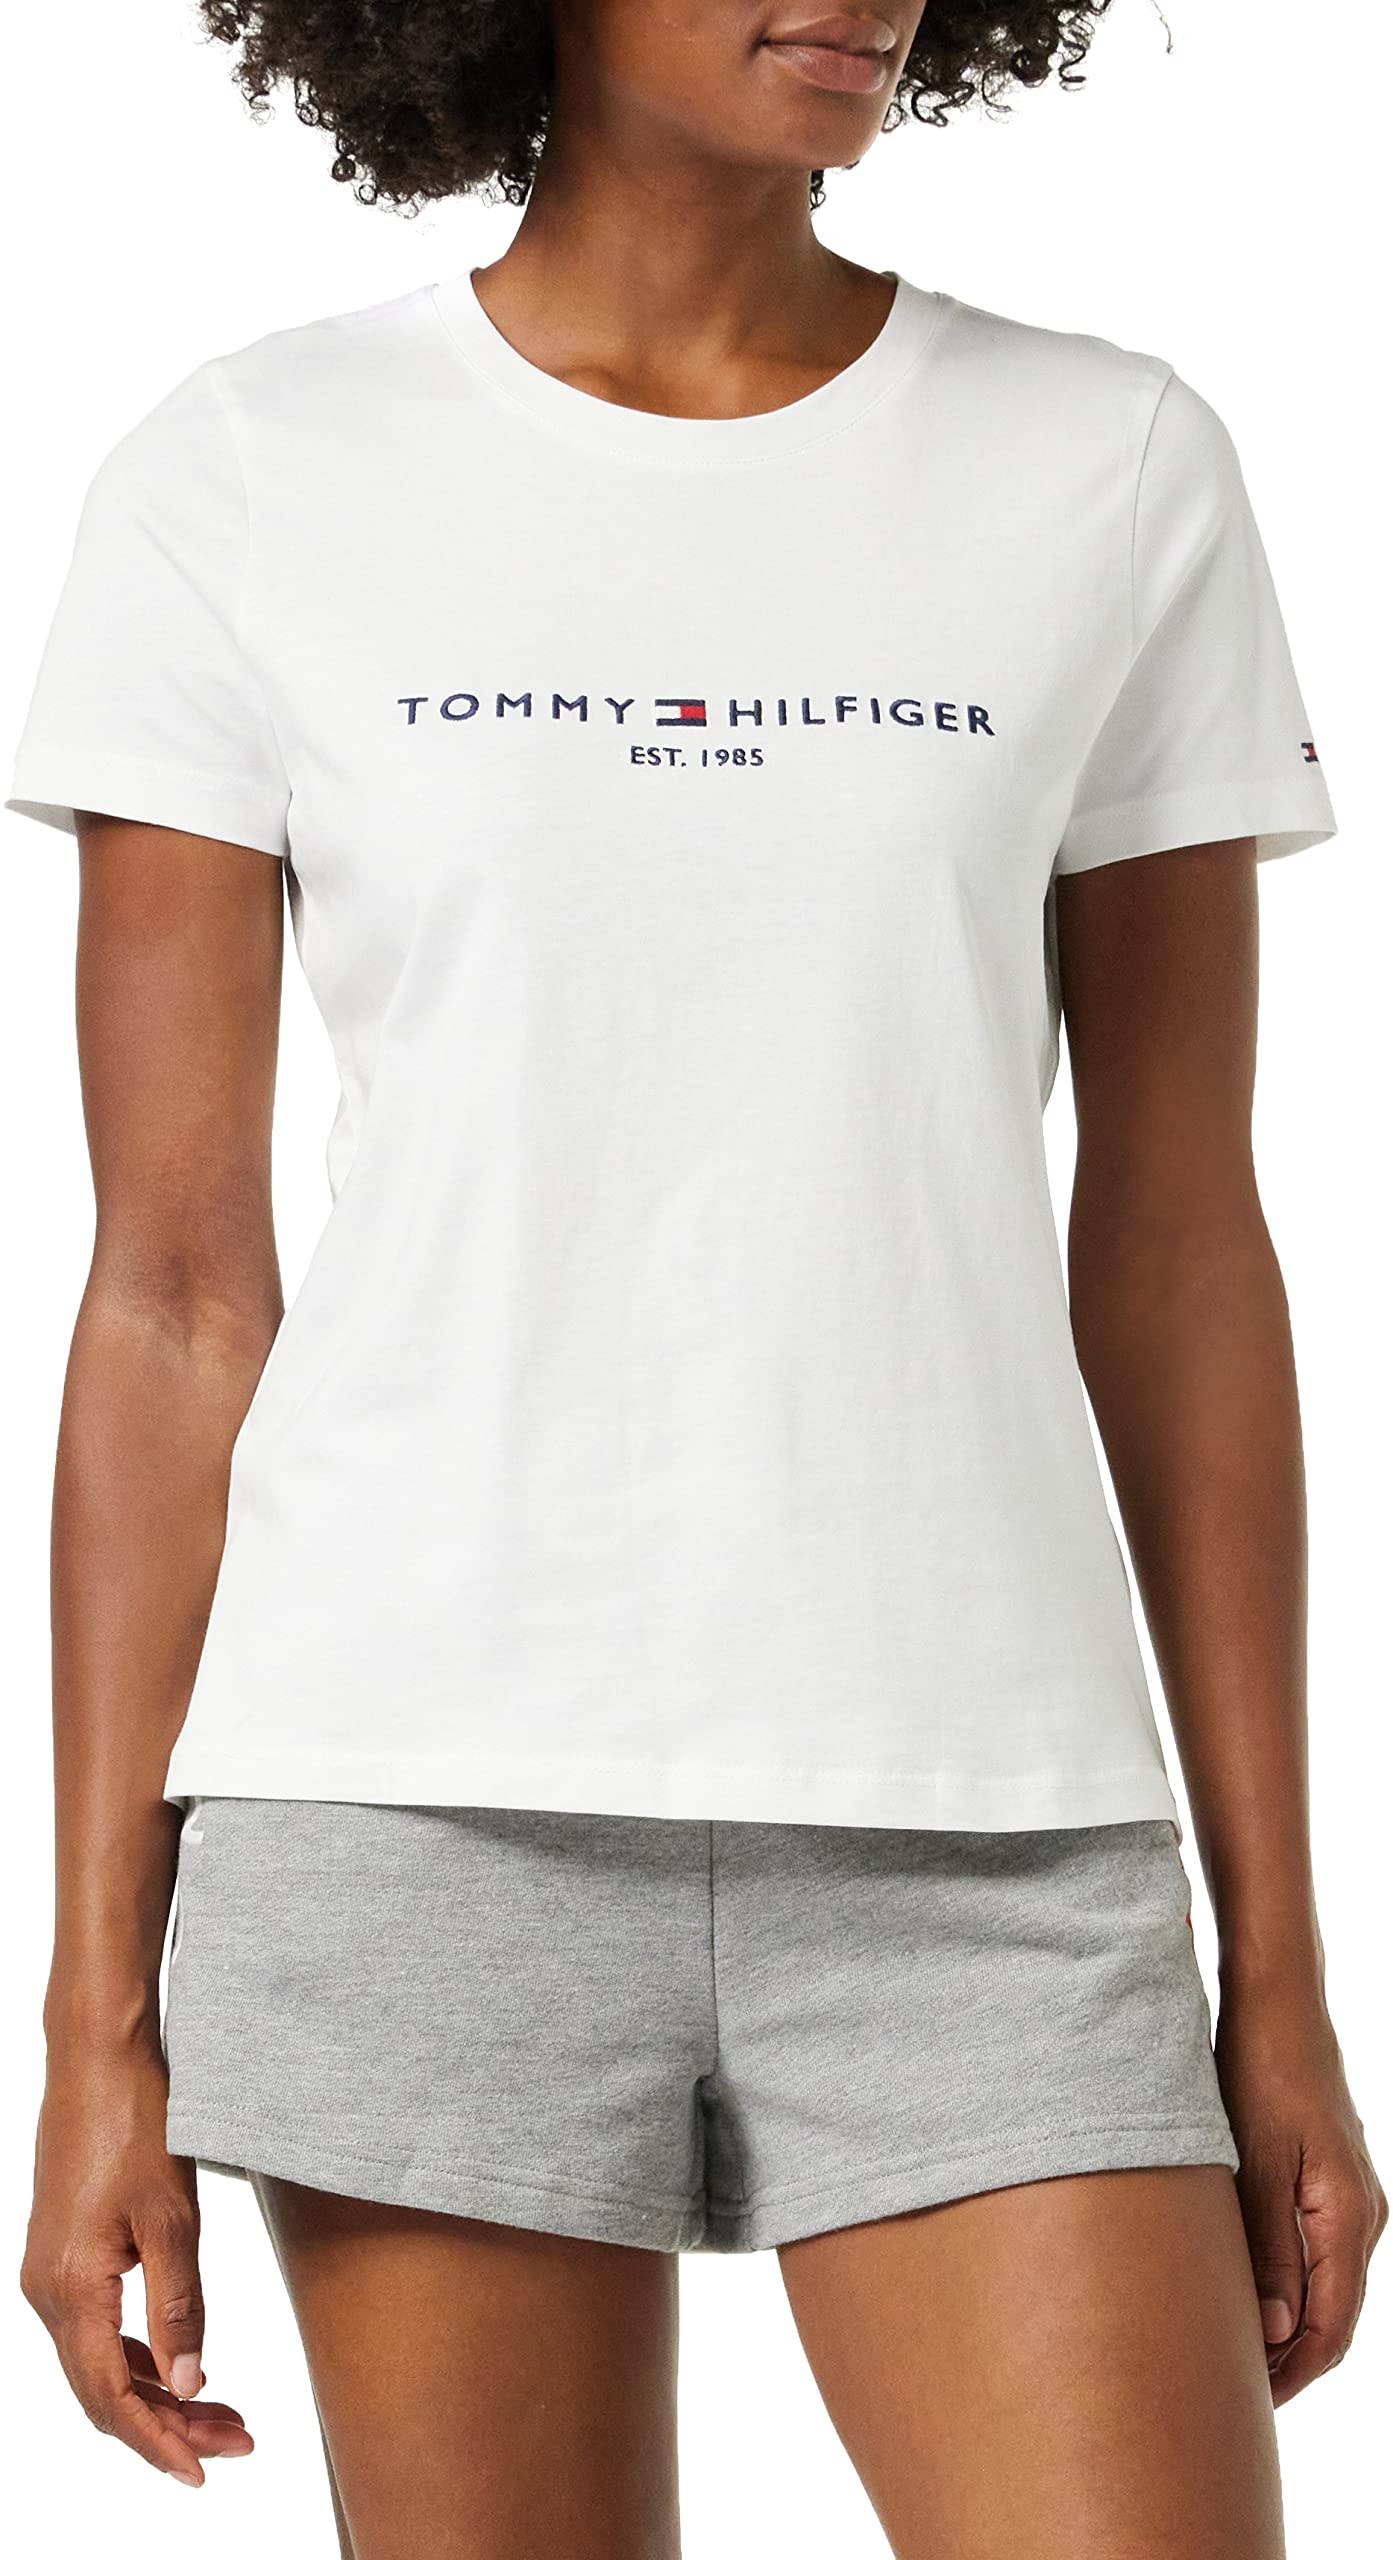 Tommy Hilfiger Damen T-Shirt Kurzarm Heritage Rundhalsausschnitt, Weiß (White), M